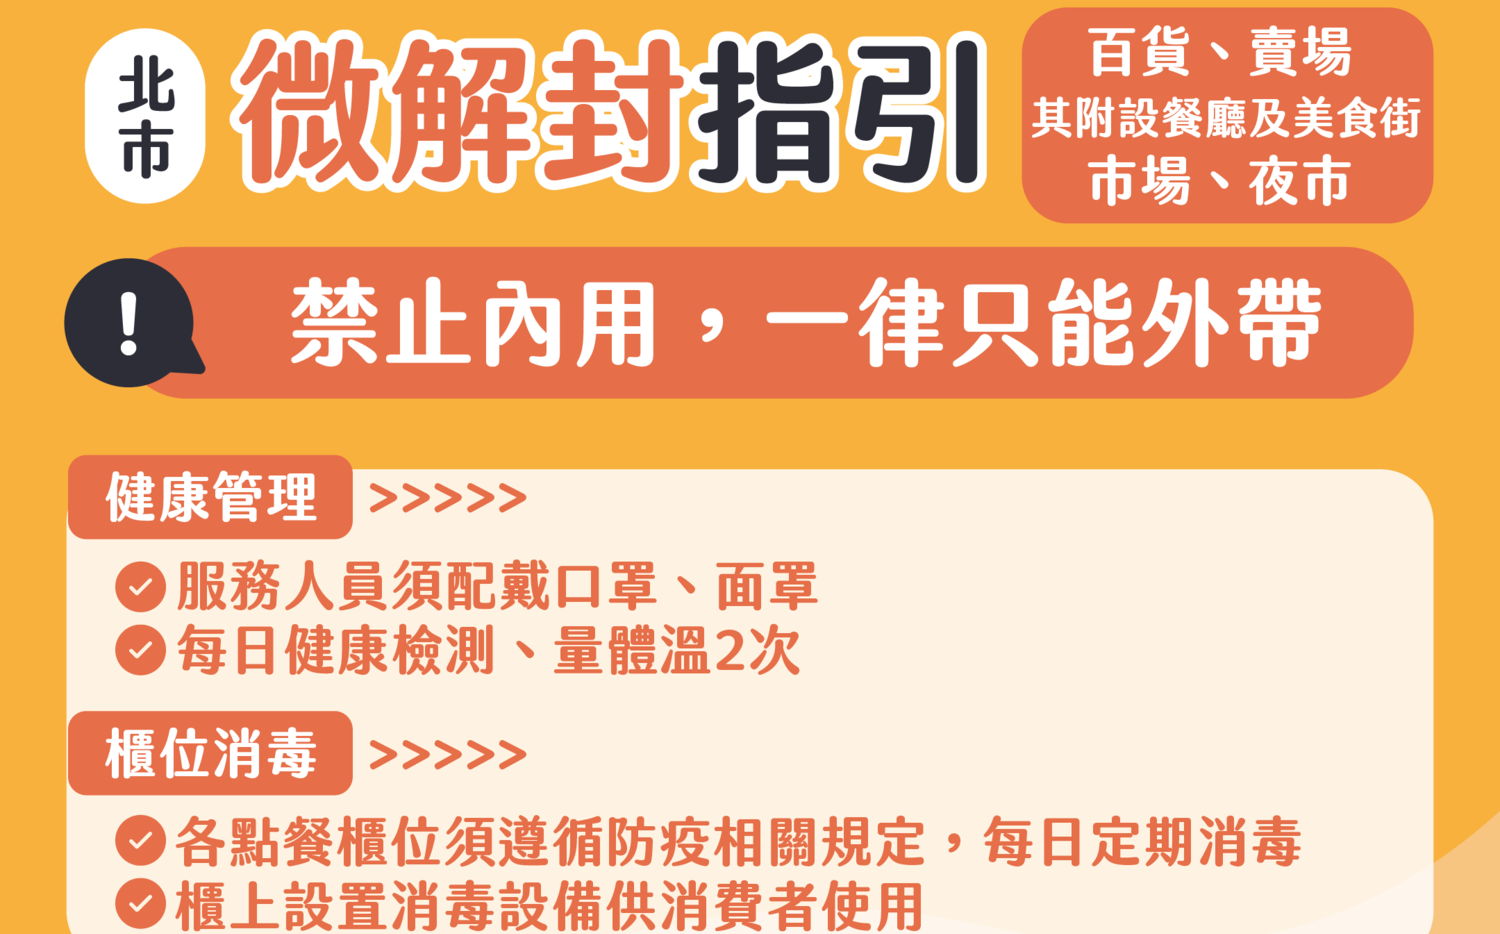 快訊》微解封》台北仍禁內用 柯文哲：涉民生經濟先鬆綁 須有配套措施 |